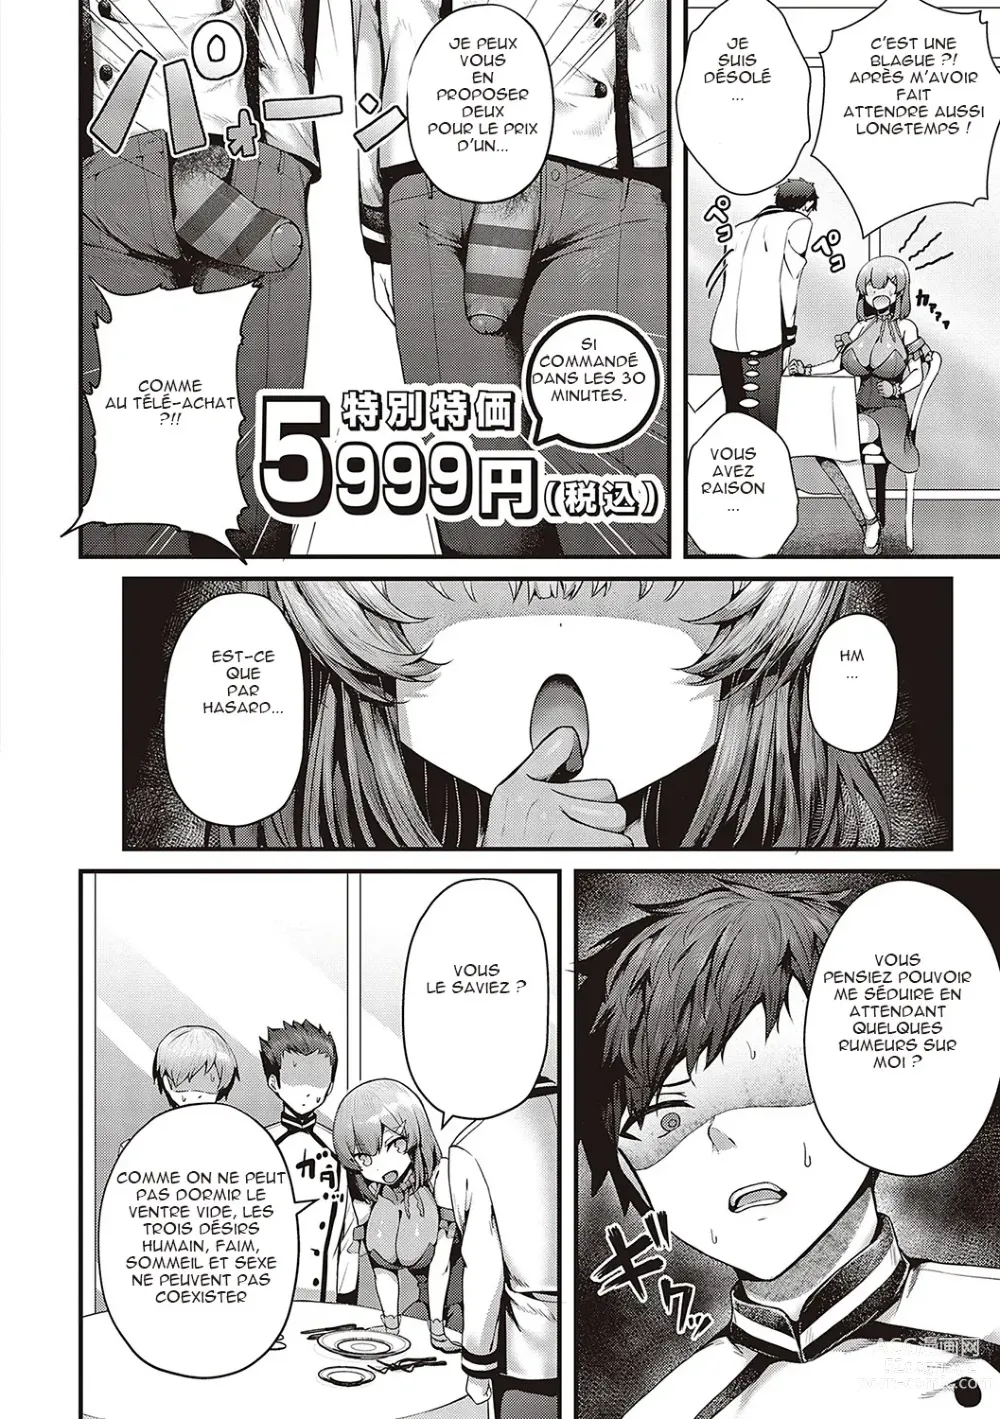 Page 8 of manga Supreme Chin Taste